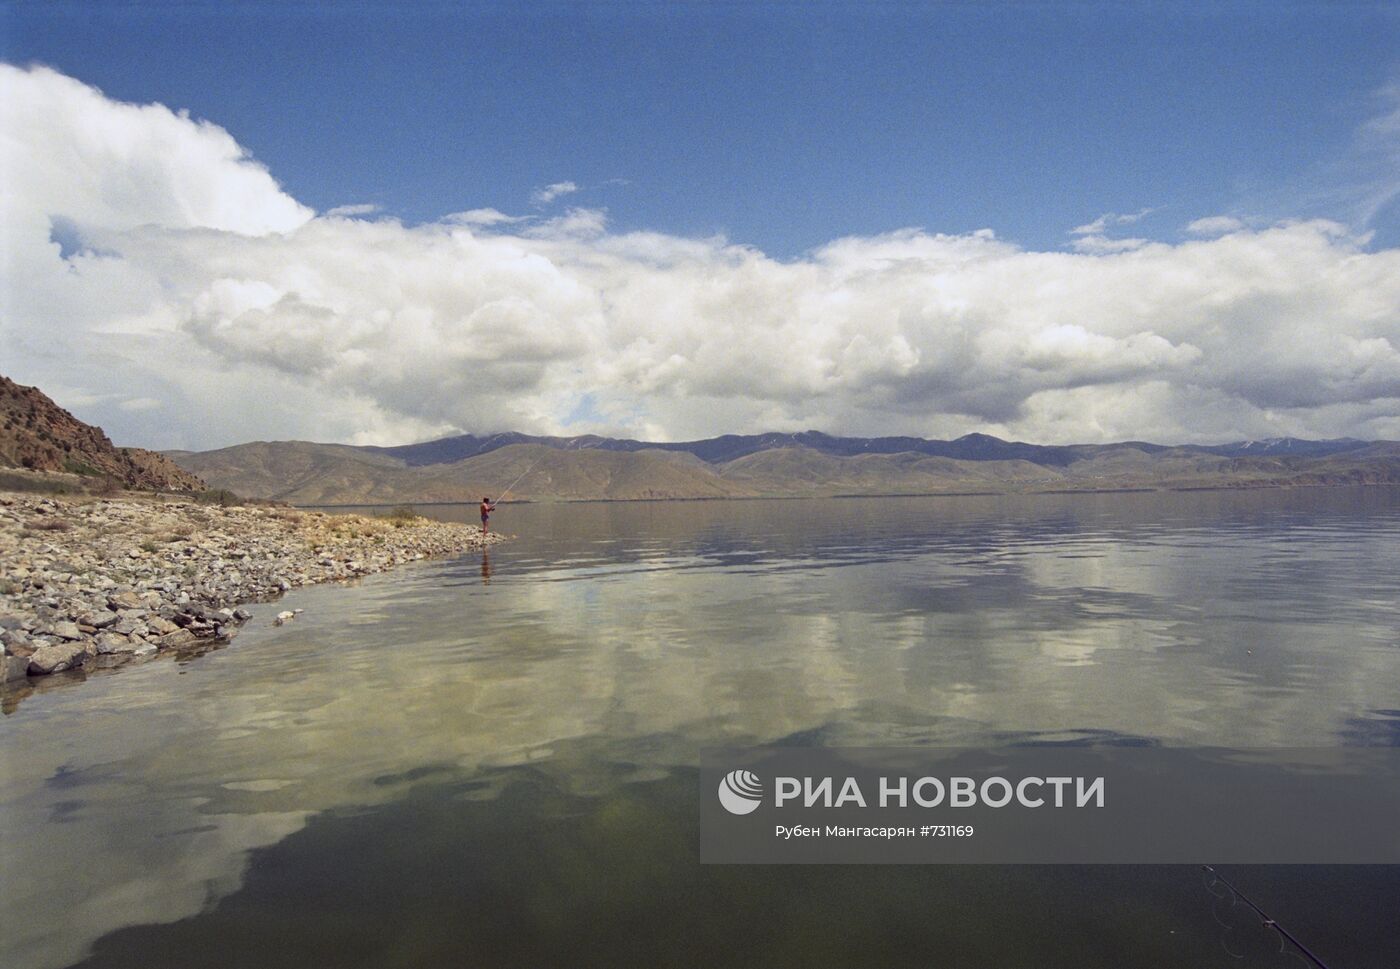 Севан - высокогорное озеро в Армении